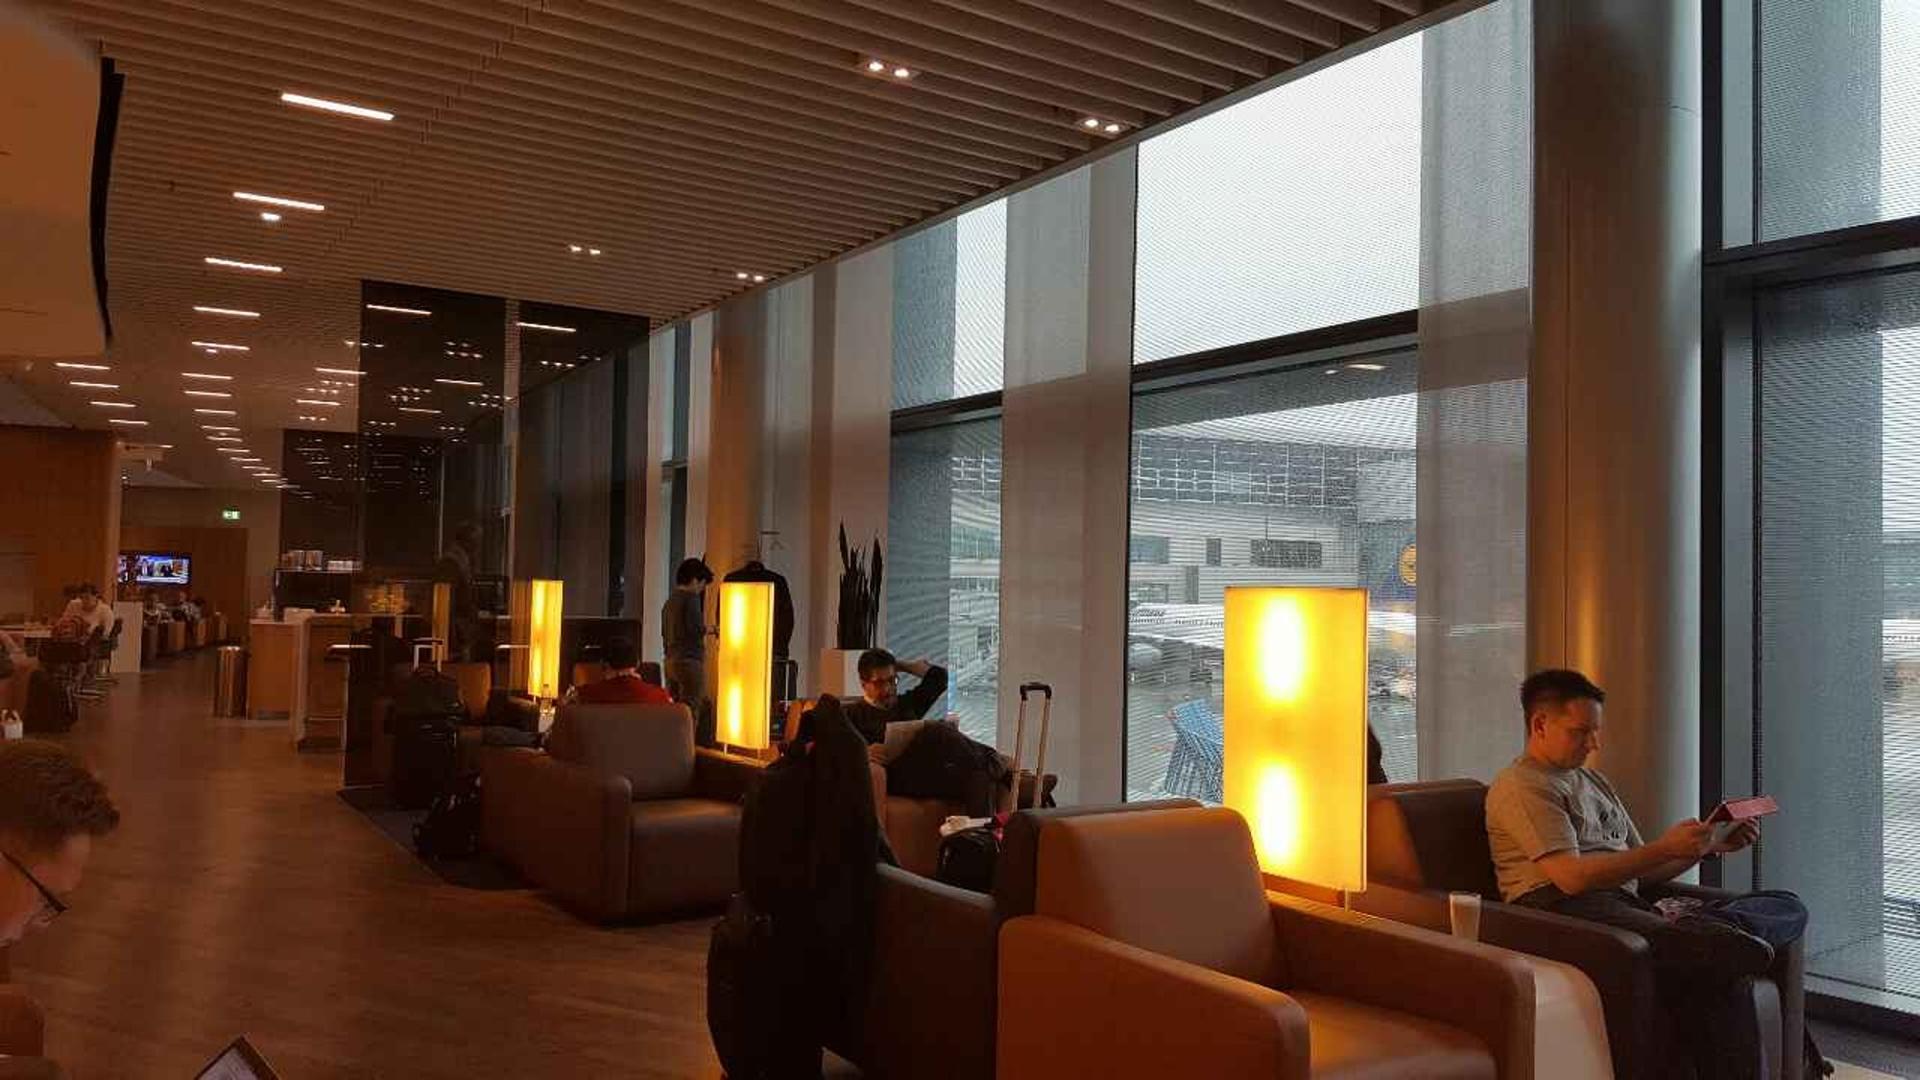 Lufthansa Senator Lounge (Schengen) image 5 of 6